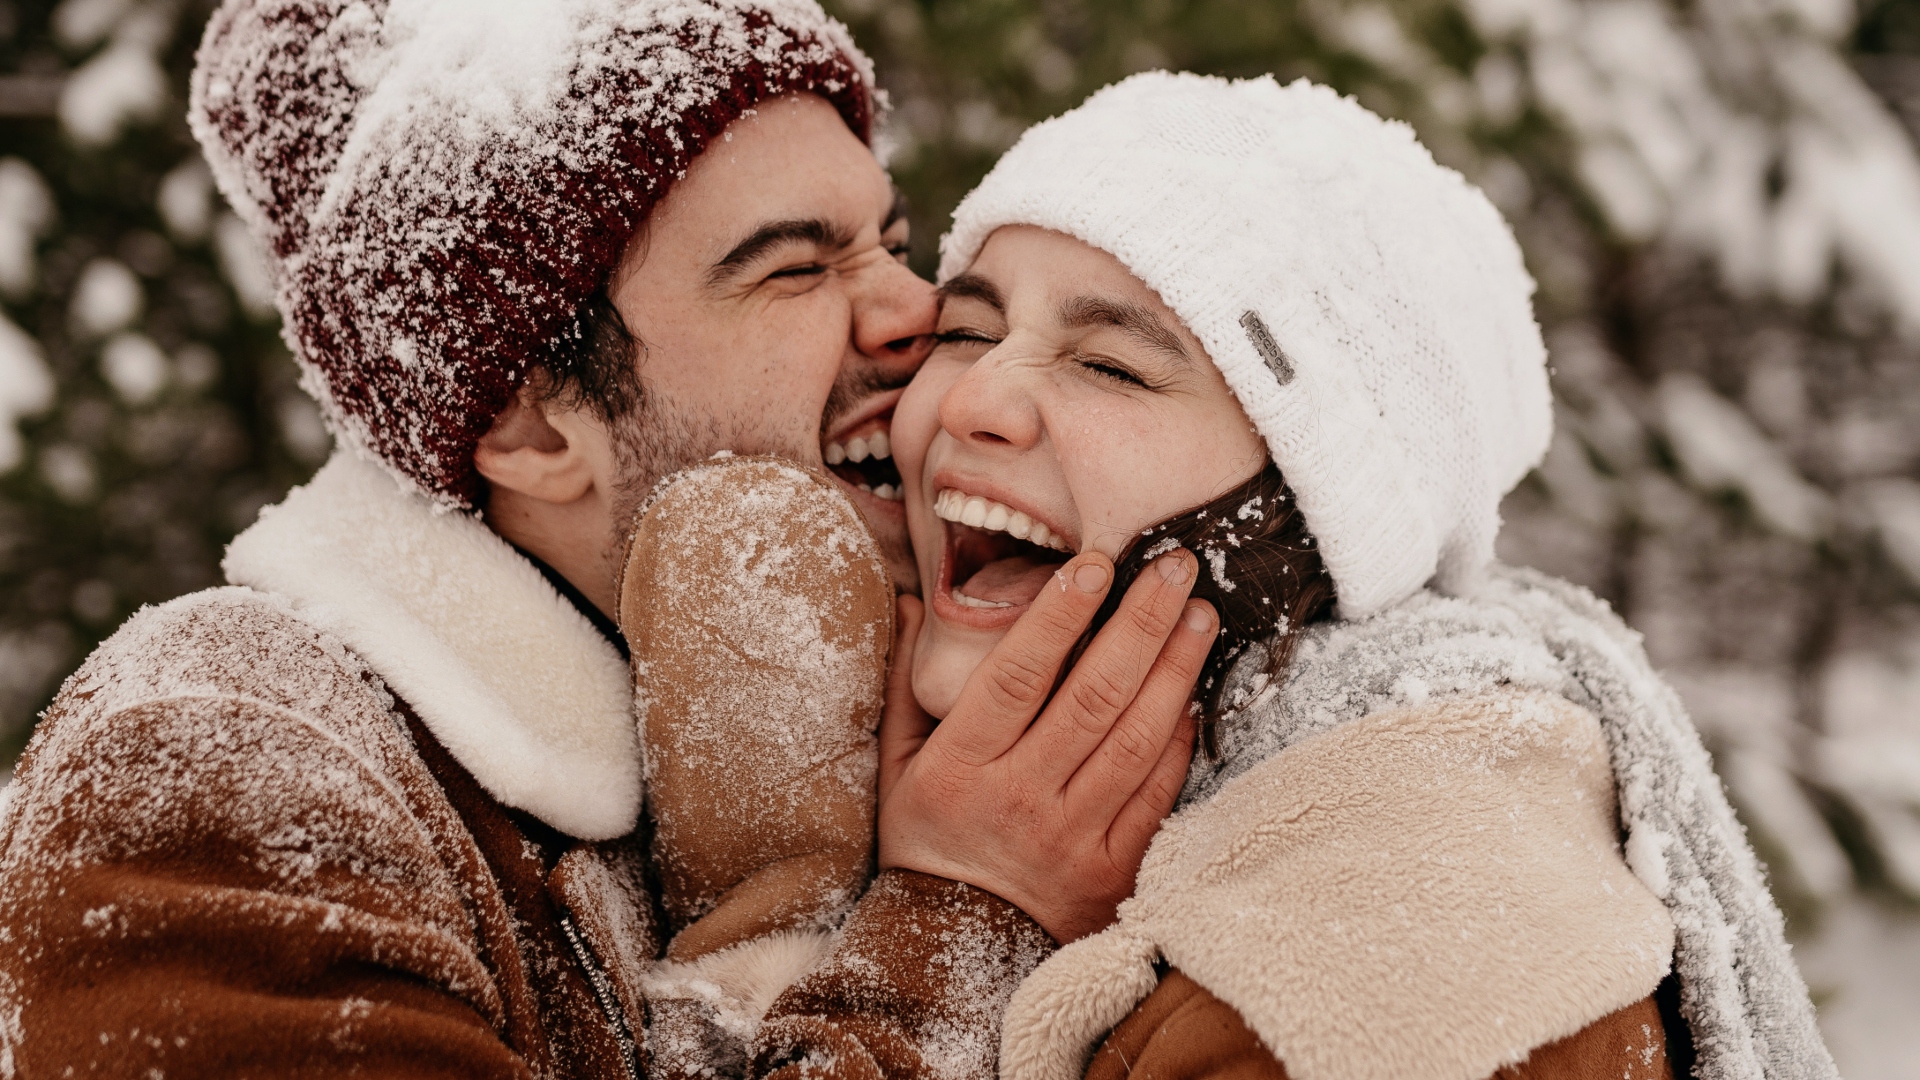 Dvojica sa smeje v snehu, je medzi nimi láska